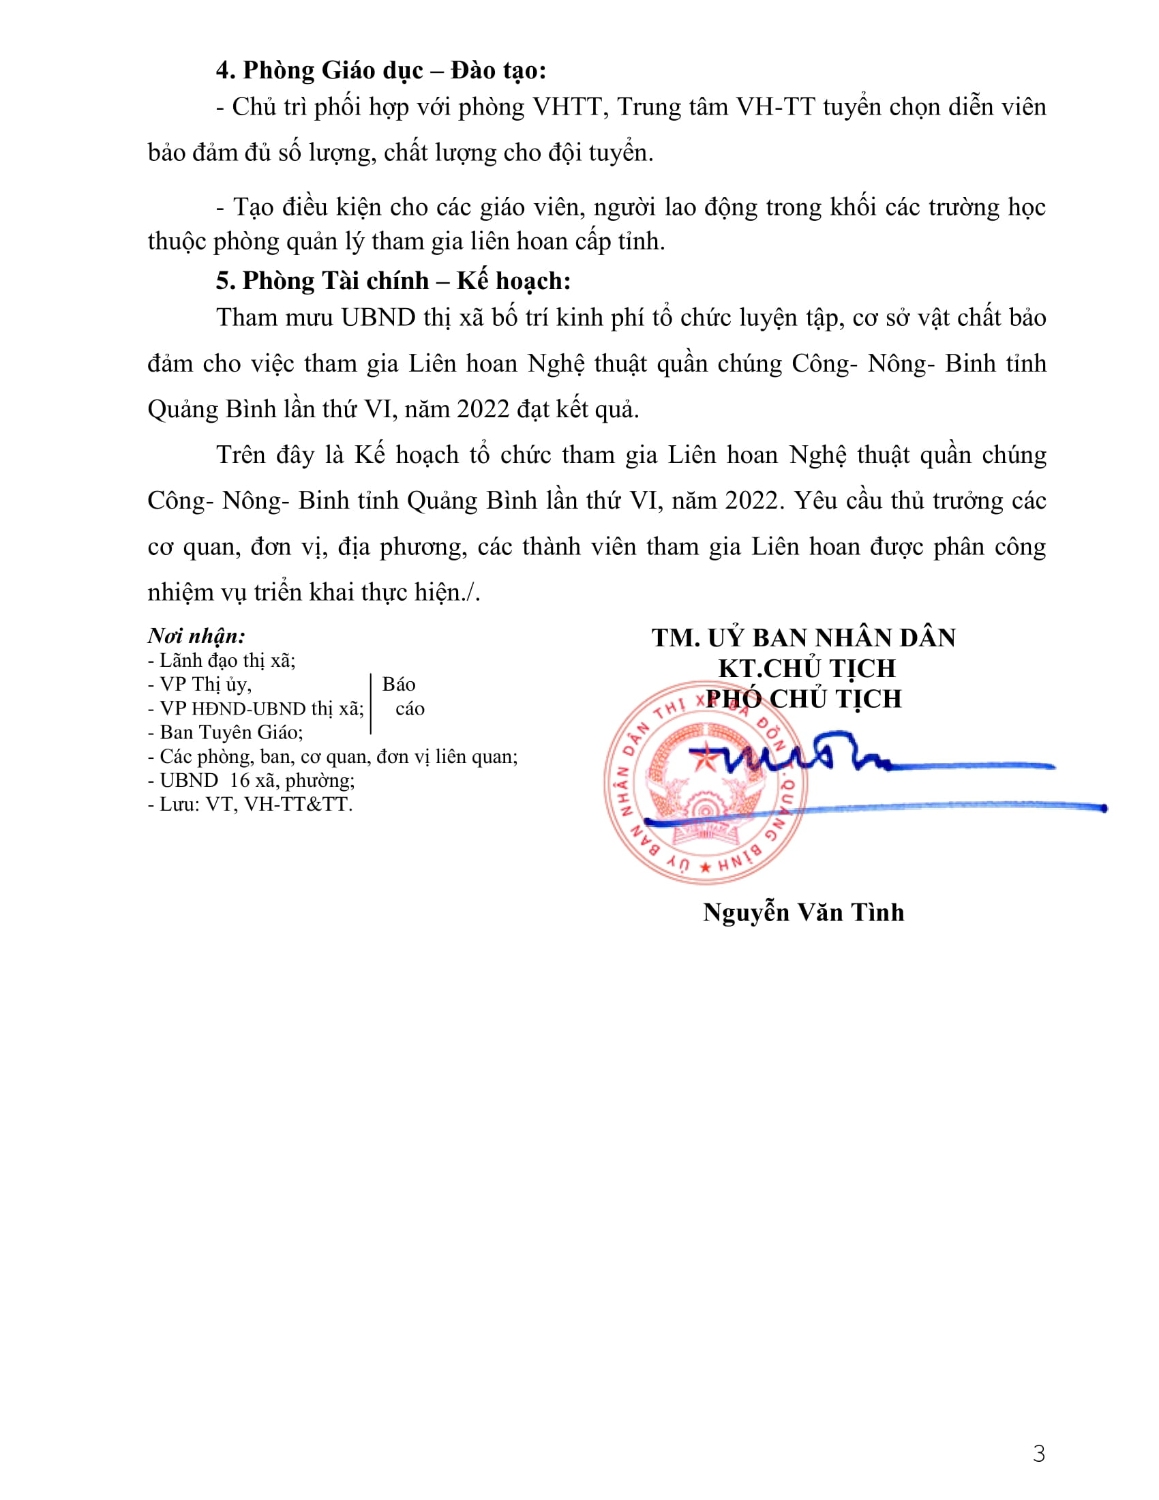 Ke hoach tham gia LH Cong Nong Binh tinh QB nam 2022 signed tinhnv bd 13 09 2022 10 43 00(13 09 2022 10h44p30) signed 3